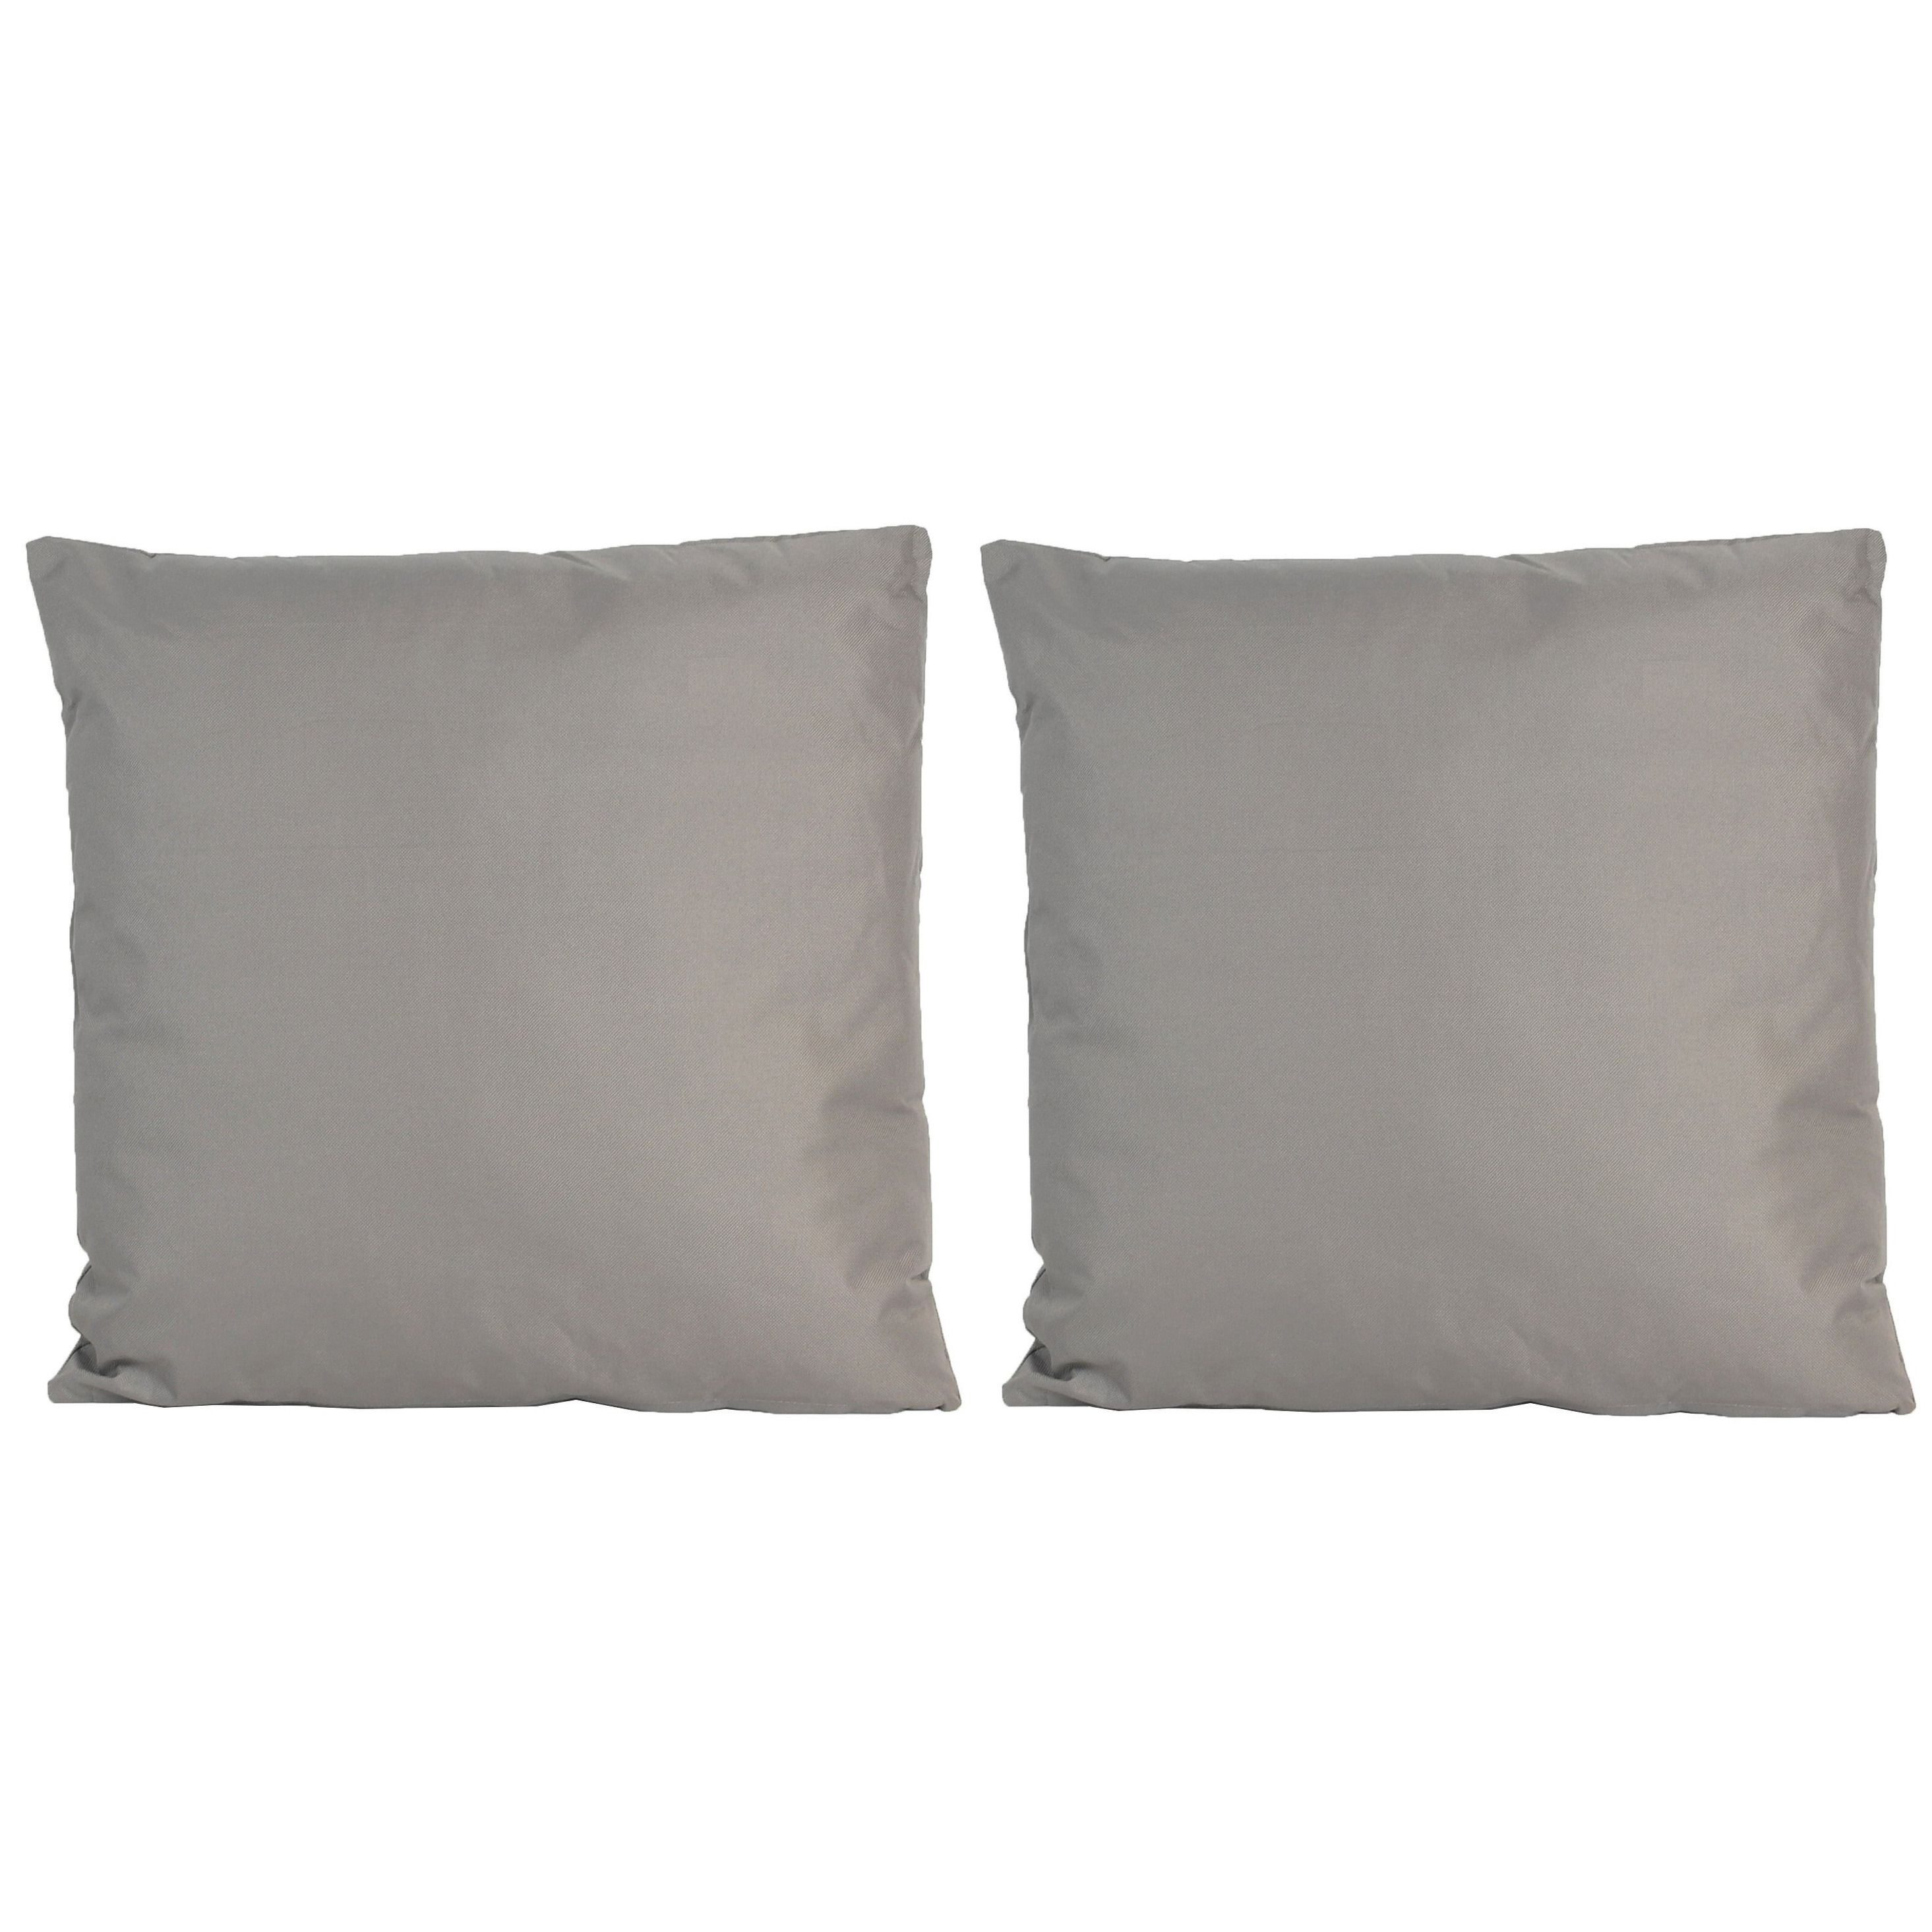 6x Bank-sier kussens voor binnen en buiten in de kleur grijs 45 x 45 cm